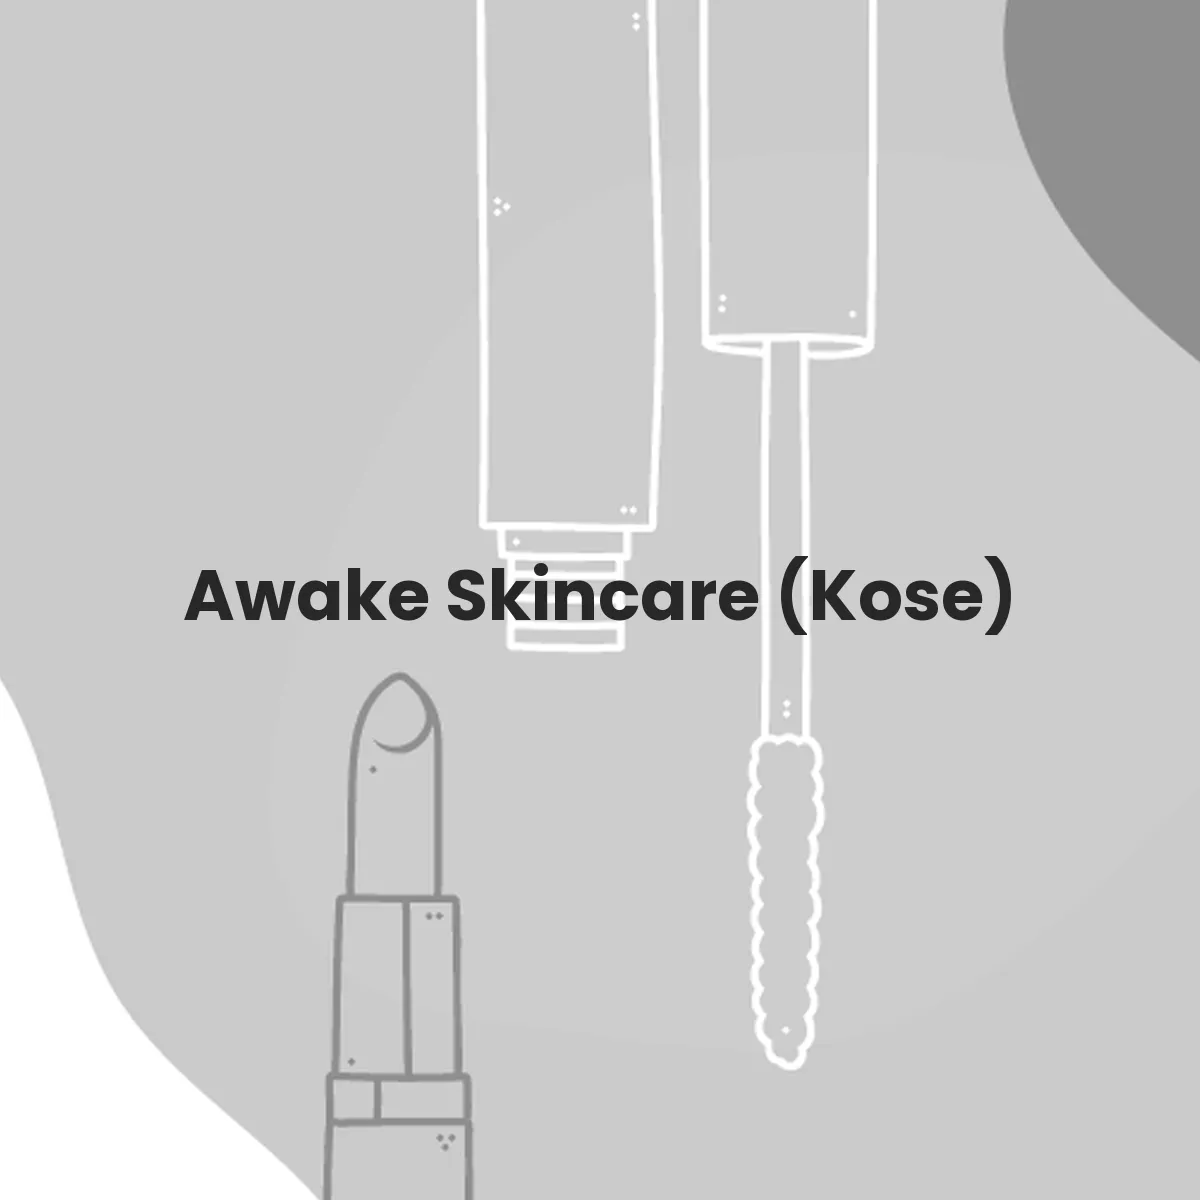 Awake Skincare (Kose) testa en animales?